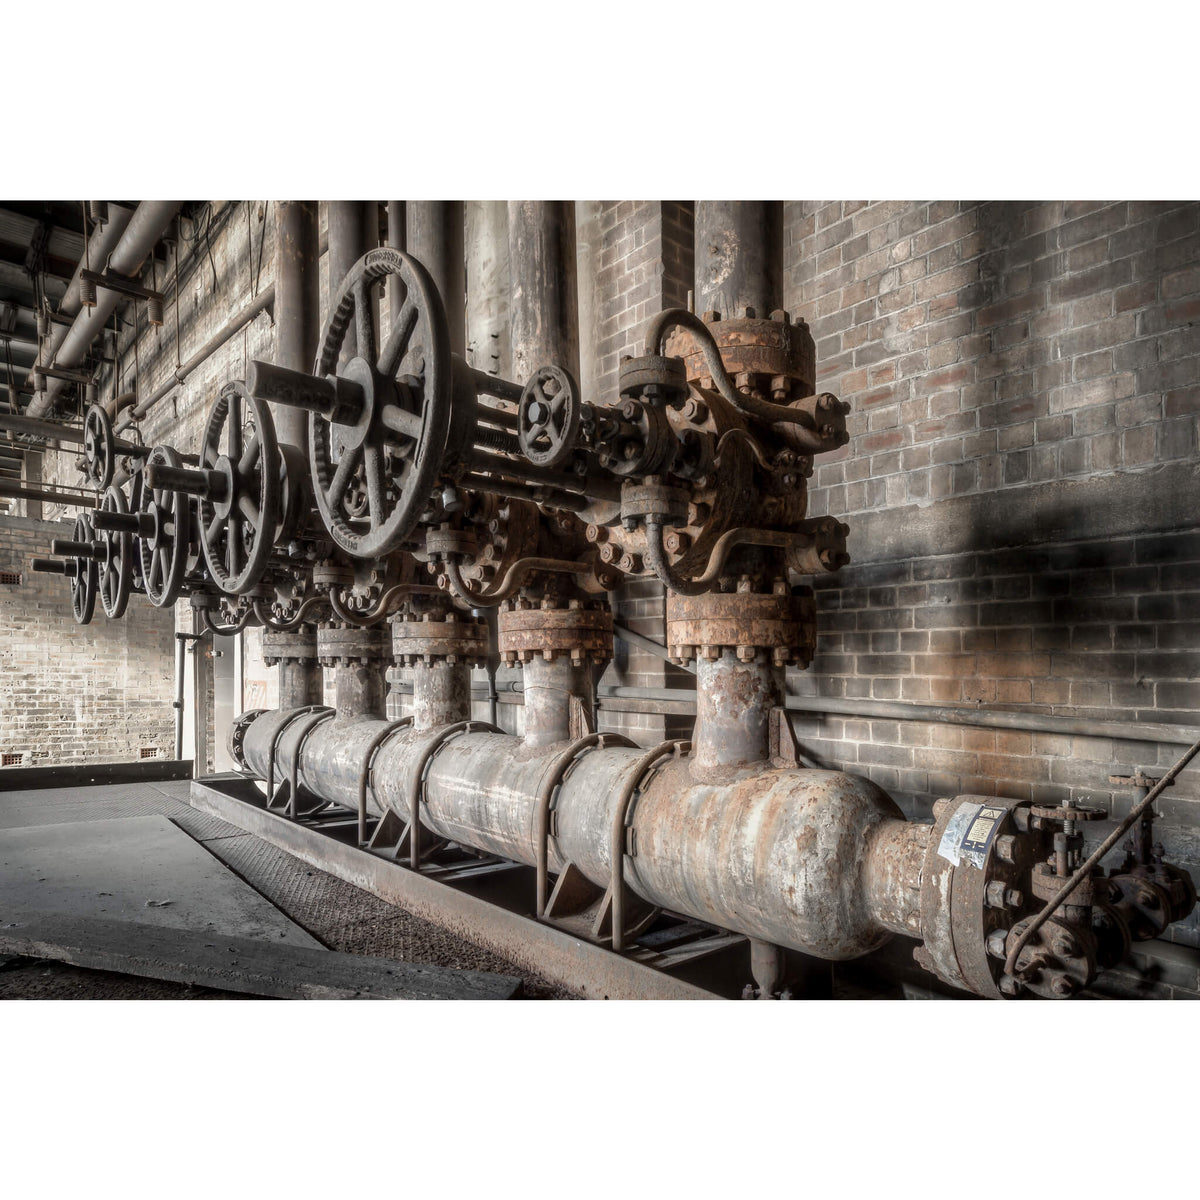 Boiler Water Valves | White Bay Power Station